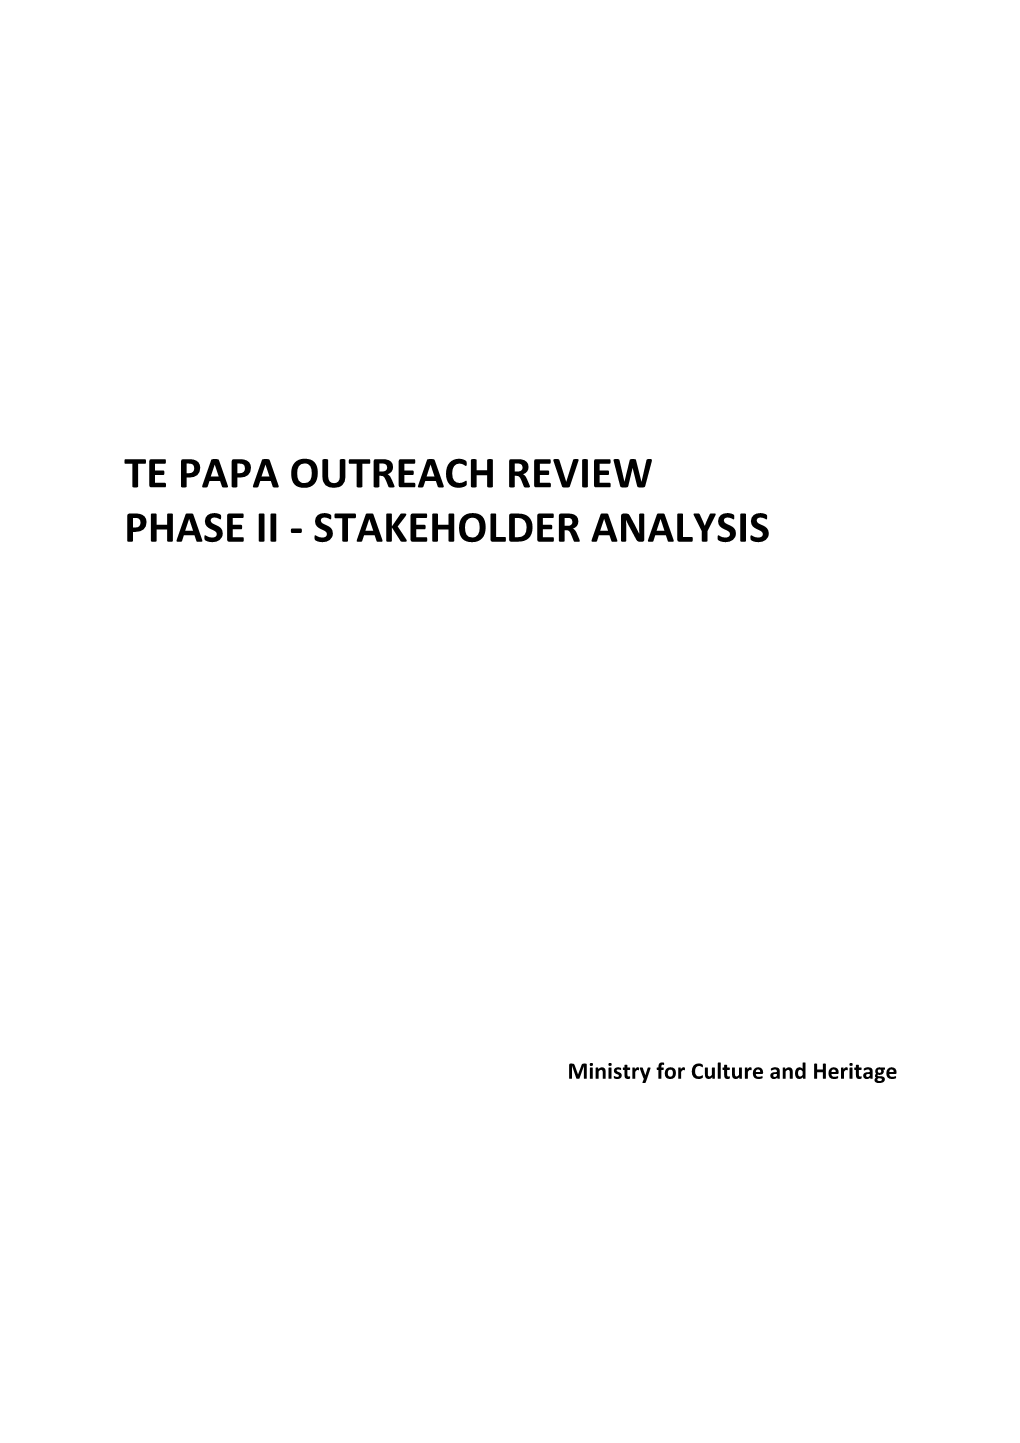 Te Papa Outreach Review Stakeholder Analysis